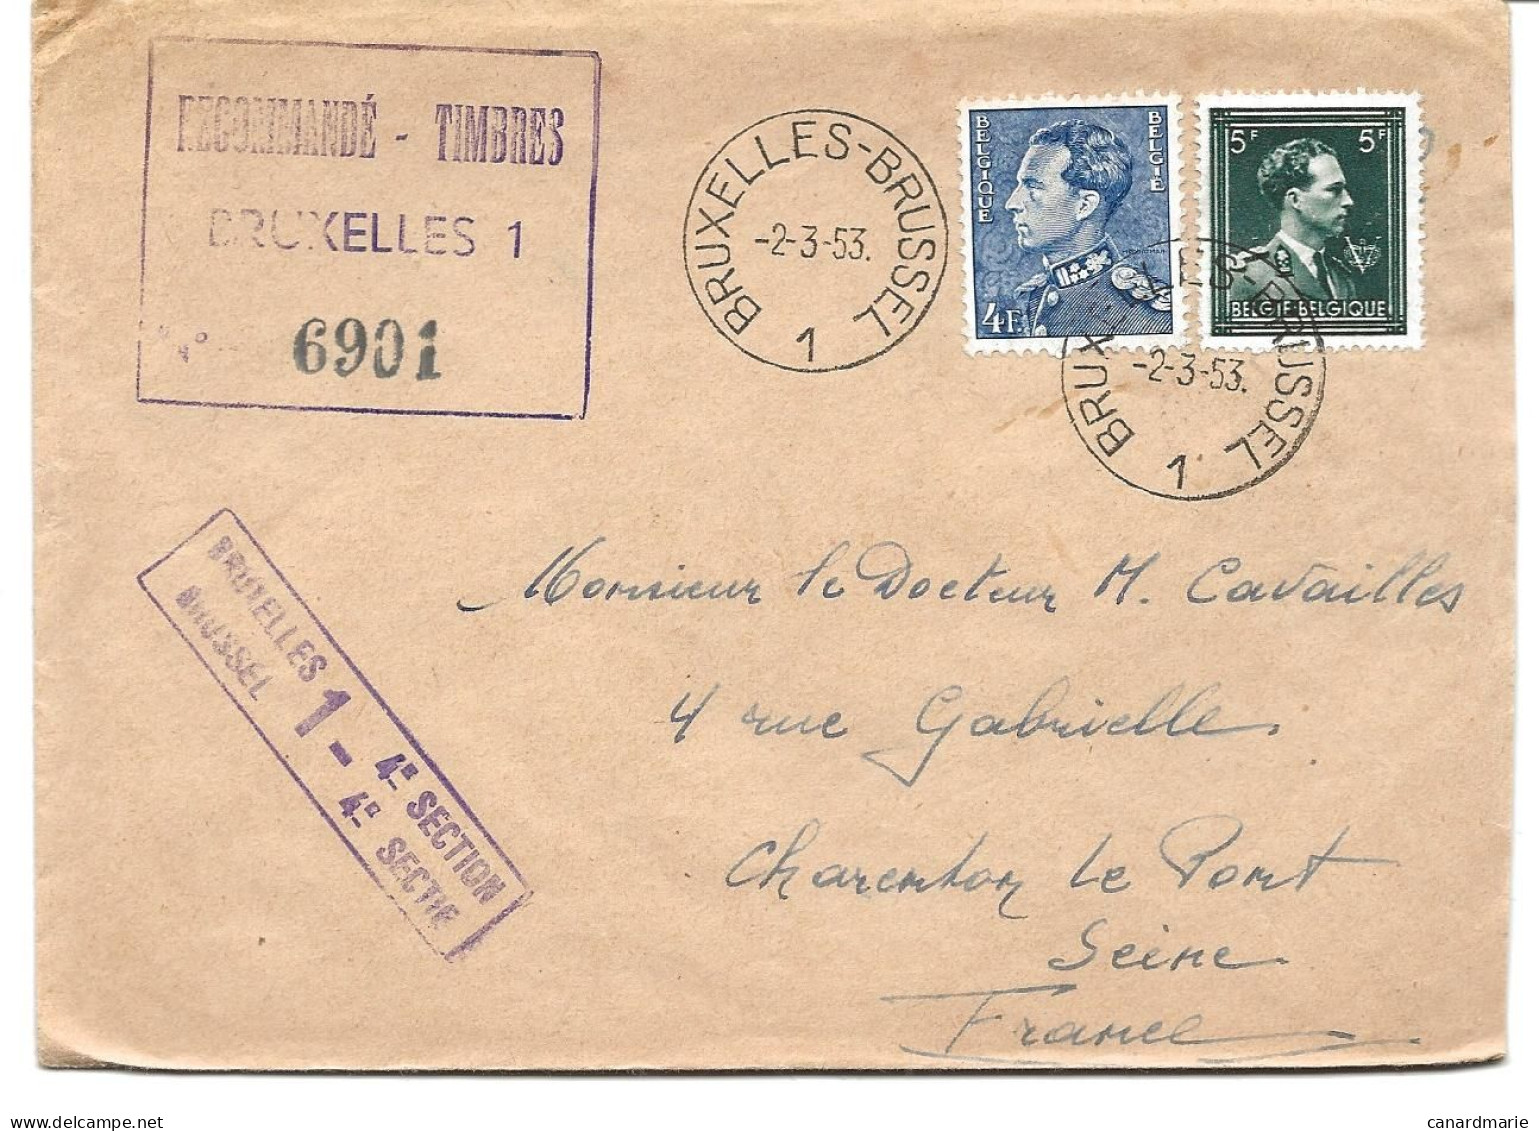 2 LETTRES POUR LA FRANCE 1953/55 AVEC CACHETS RECOMMANDE-TIMBRES BRUXELLES 1 - 4° SECTION - Covers & Documents